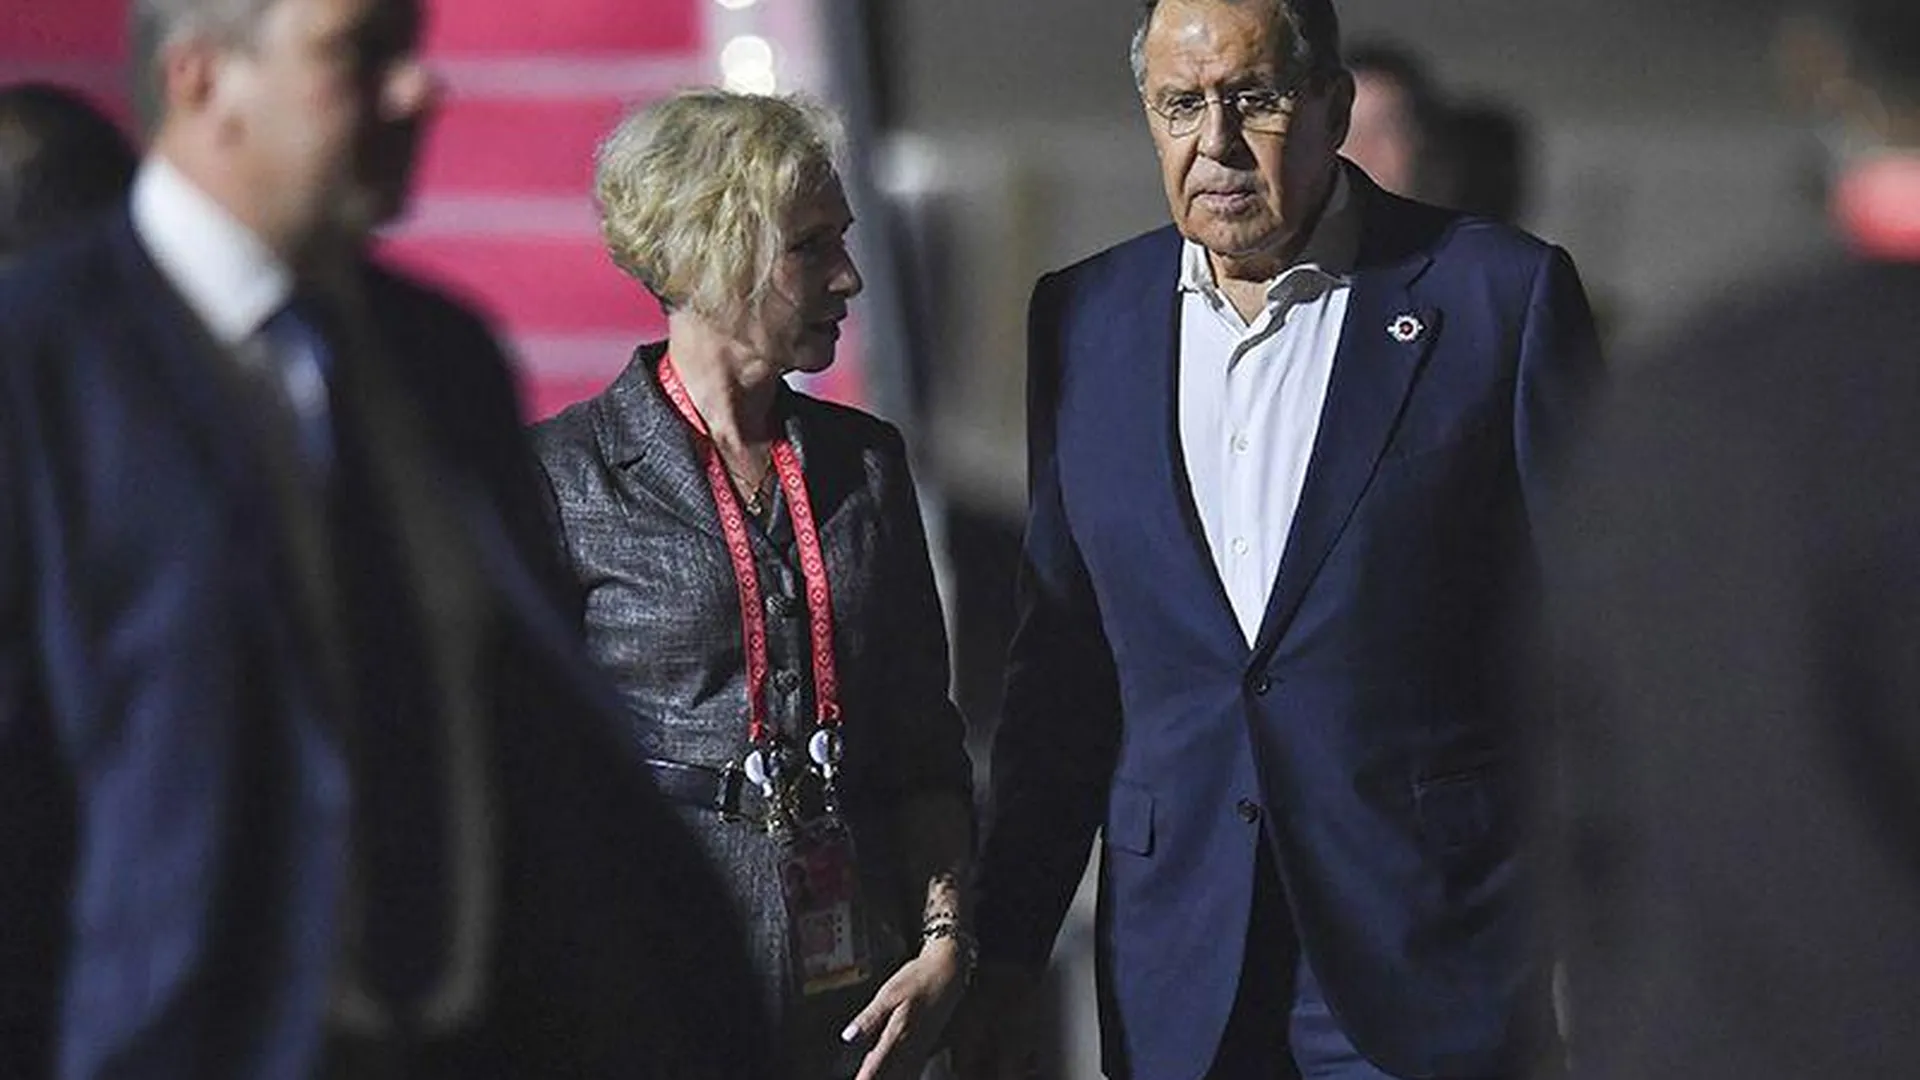 СМИ хотели сорвать встречу Лаврова на саммите G20